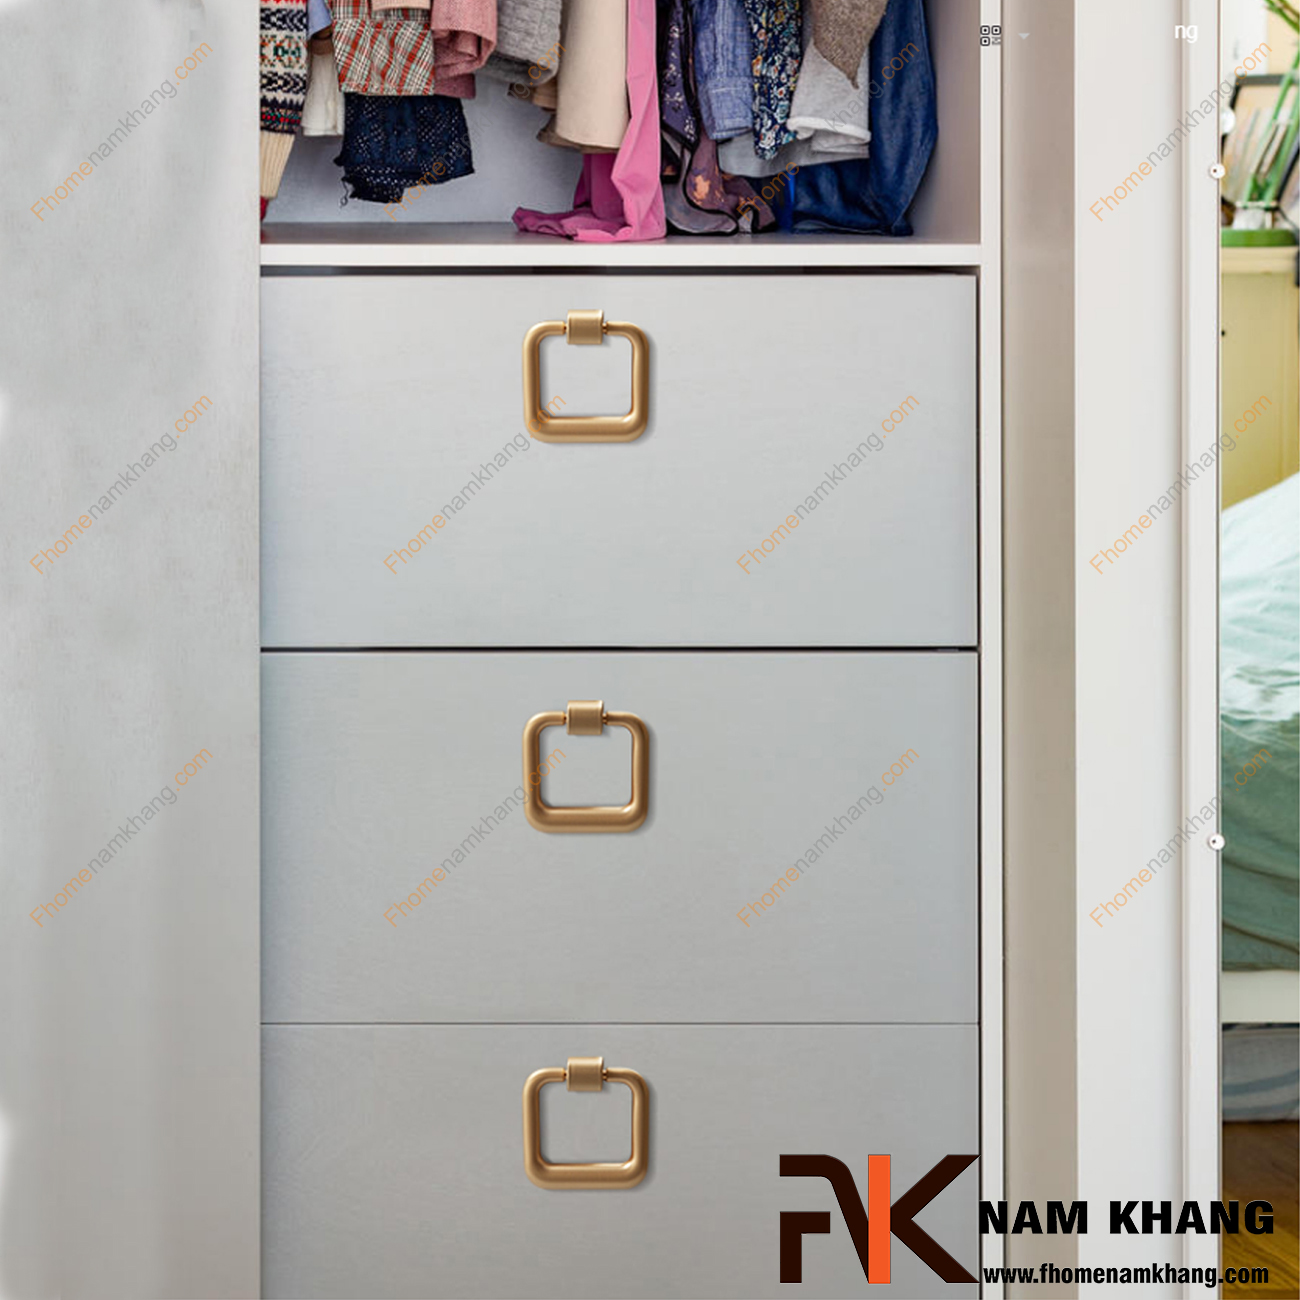 Thiết kế đơn giản, chất liệu bền bỉ, lắp đặt dễ dàng, vẻ đẹp thu hút . Núm cửa tủ dạng vòng vuông màu vàng mờ NK376-VM là một sự lựa chọn không thể bỏ qua khi lắp đặt các phụ kiện nội thất.